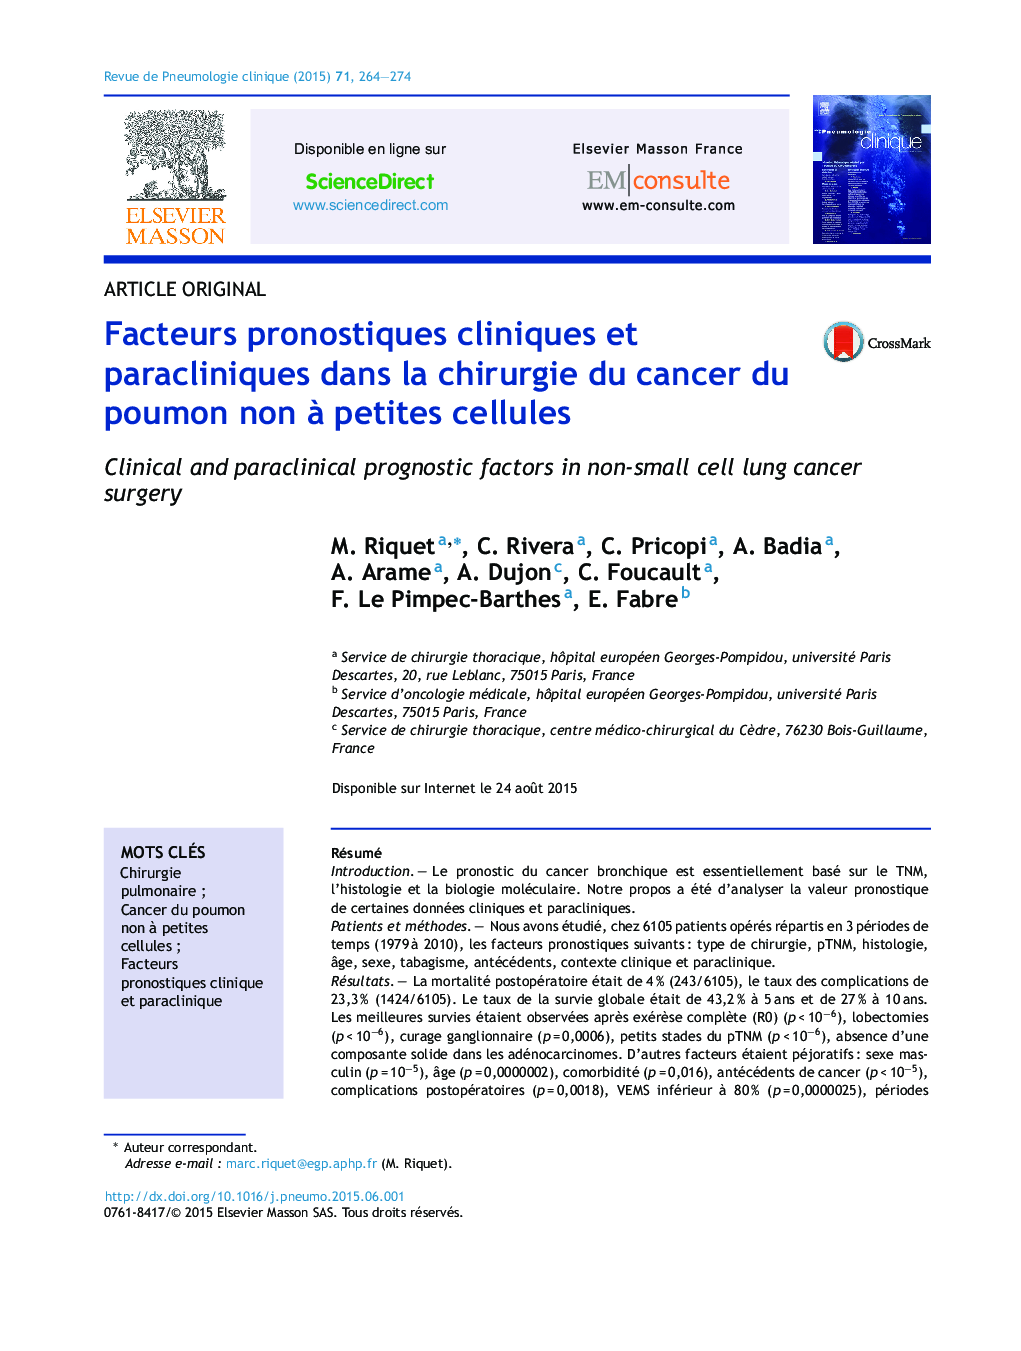 عوامل پیش آگهی بالینی و پاراکلینیک در جراحی سرطان سلول های غیر سلولی کوچک 